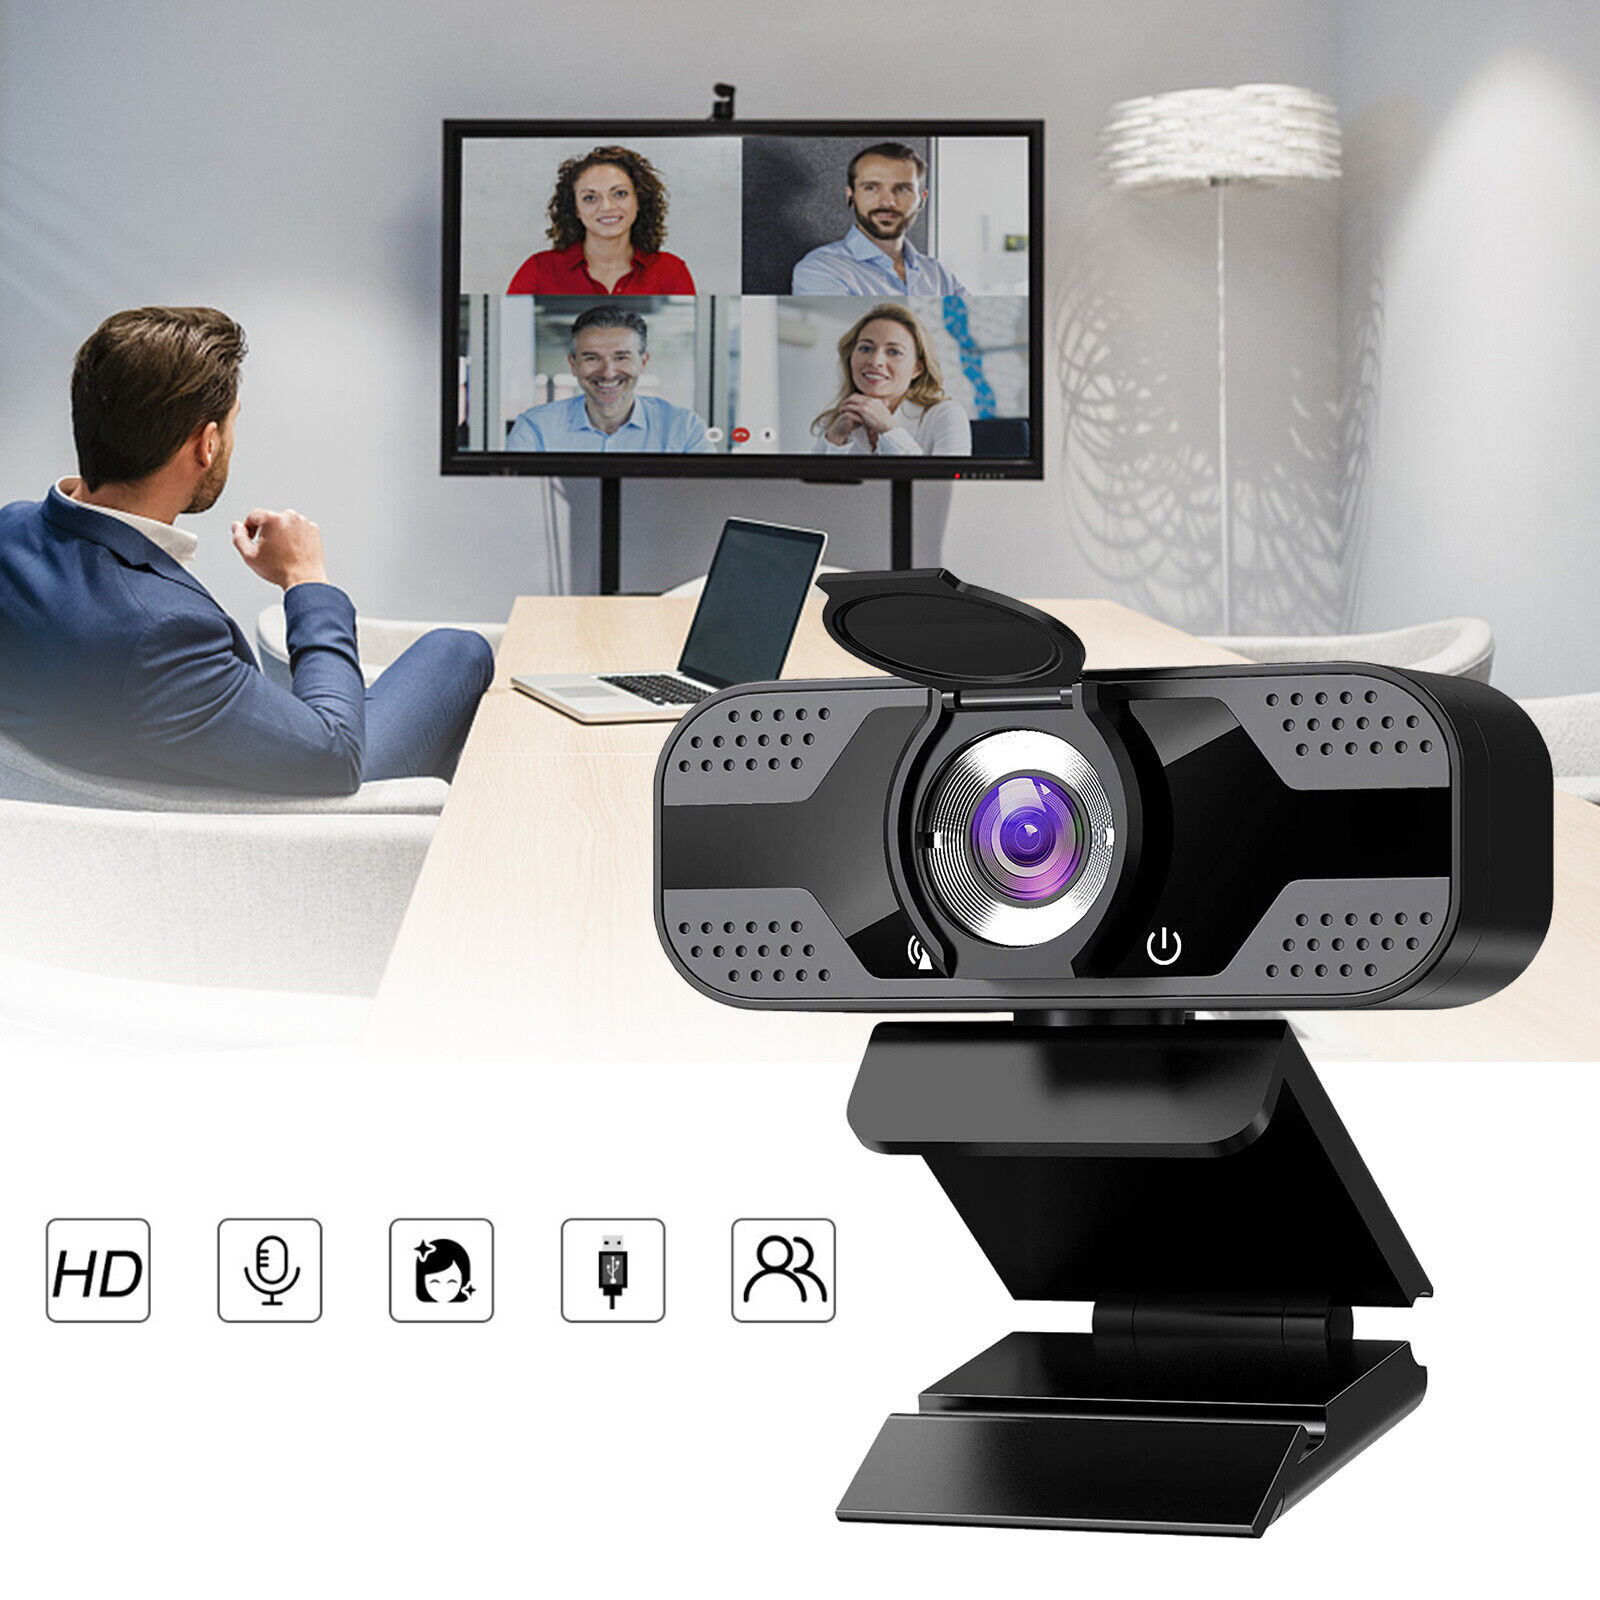 1PCS 1080P HD USB Webcam For PC Desktop&Laptop Web Camera W/Built-in Microphone